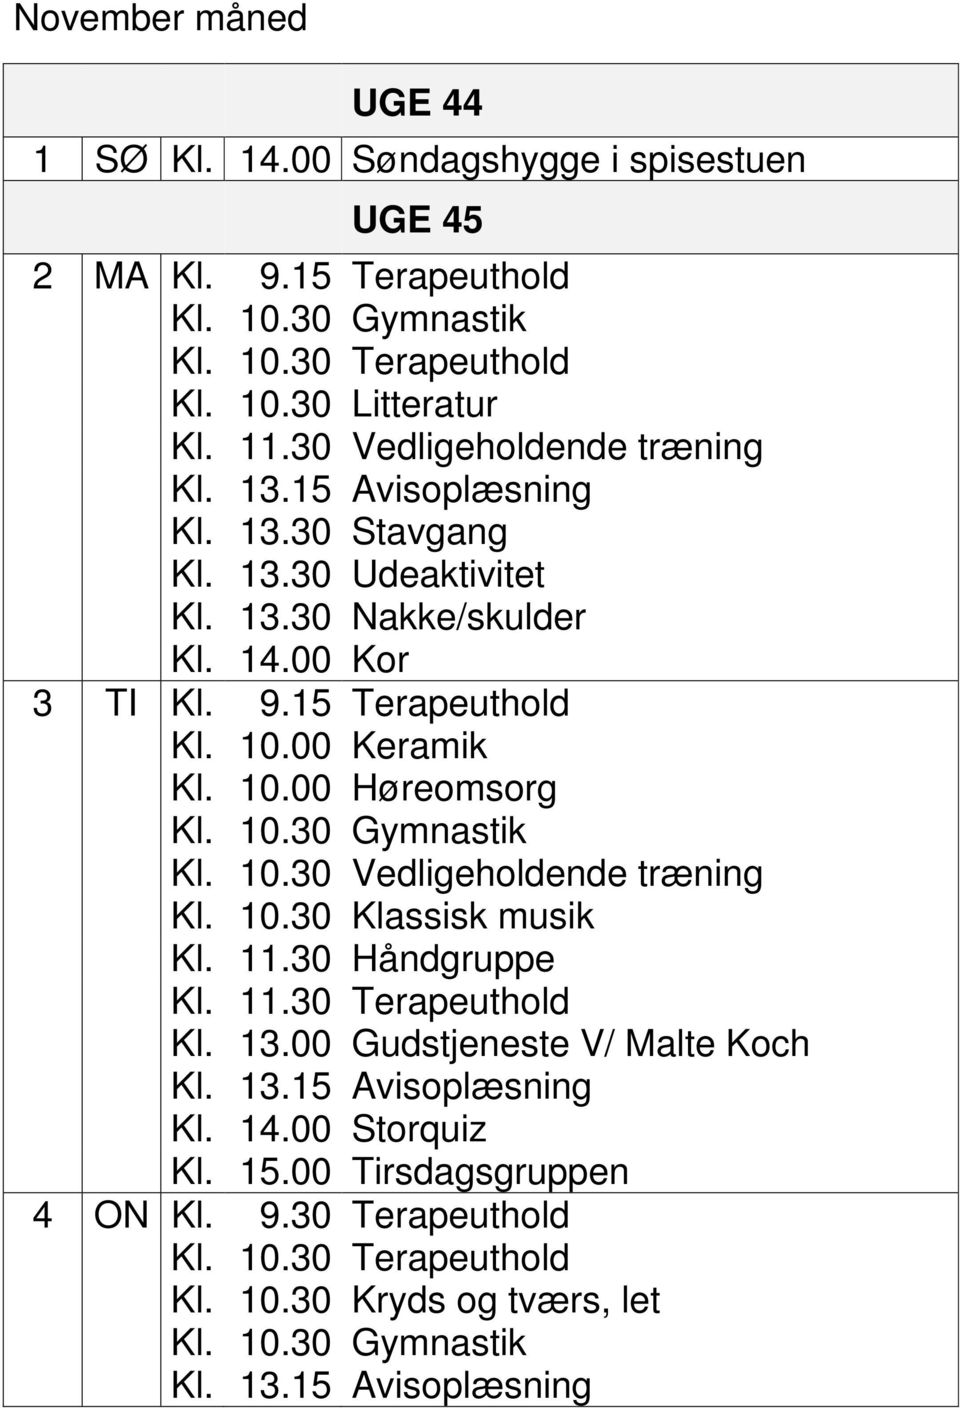 11.30 Håndgruppe Kl. 11.30 Terapeuthold Kl. 13.00 Gudstjeneste V/ Malte Koch Kl. 14.